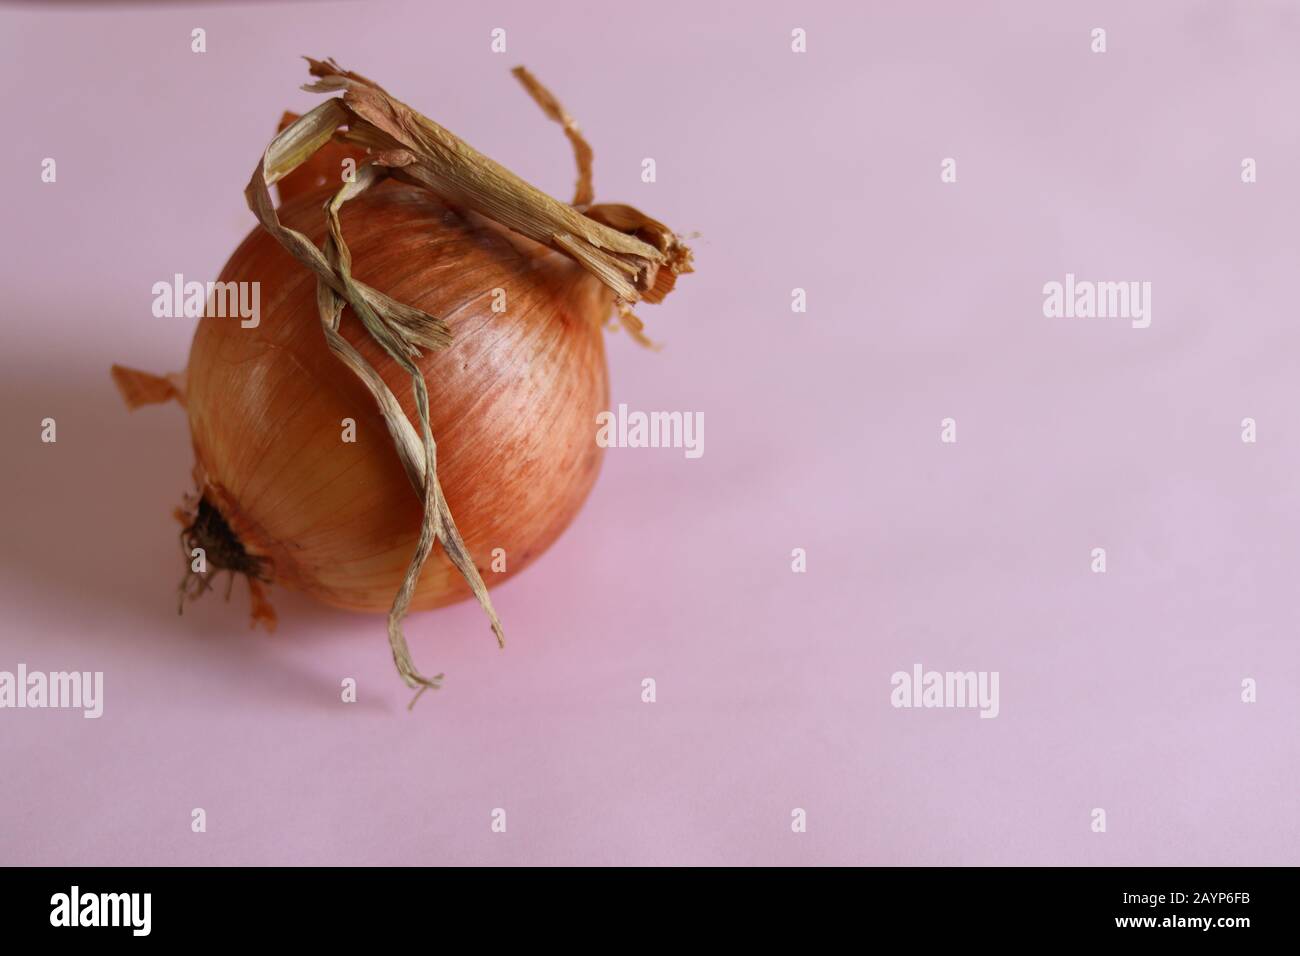 Eine einzige Zwiebelbirne mit pinkfarbenem Hintergrund, die das Konzept der Gastronomie, Küche und Lebensmittelindustrie zeigt Stockfoto